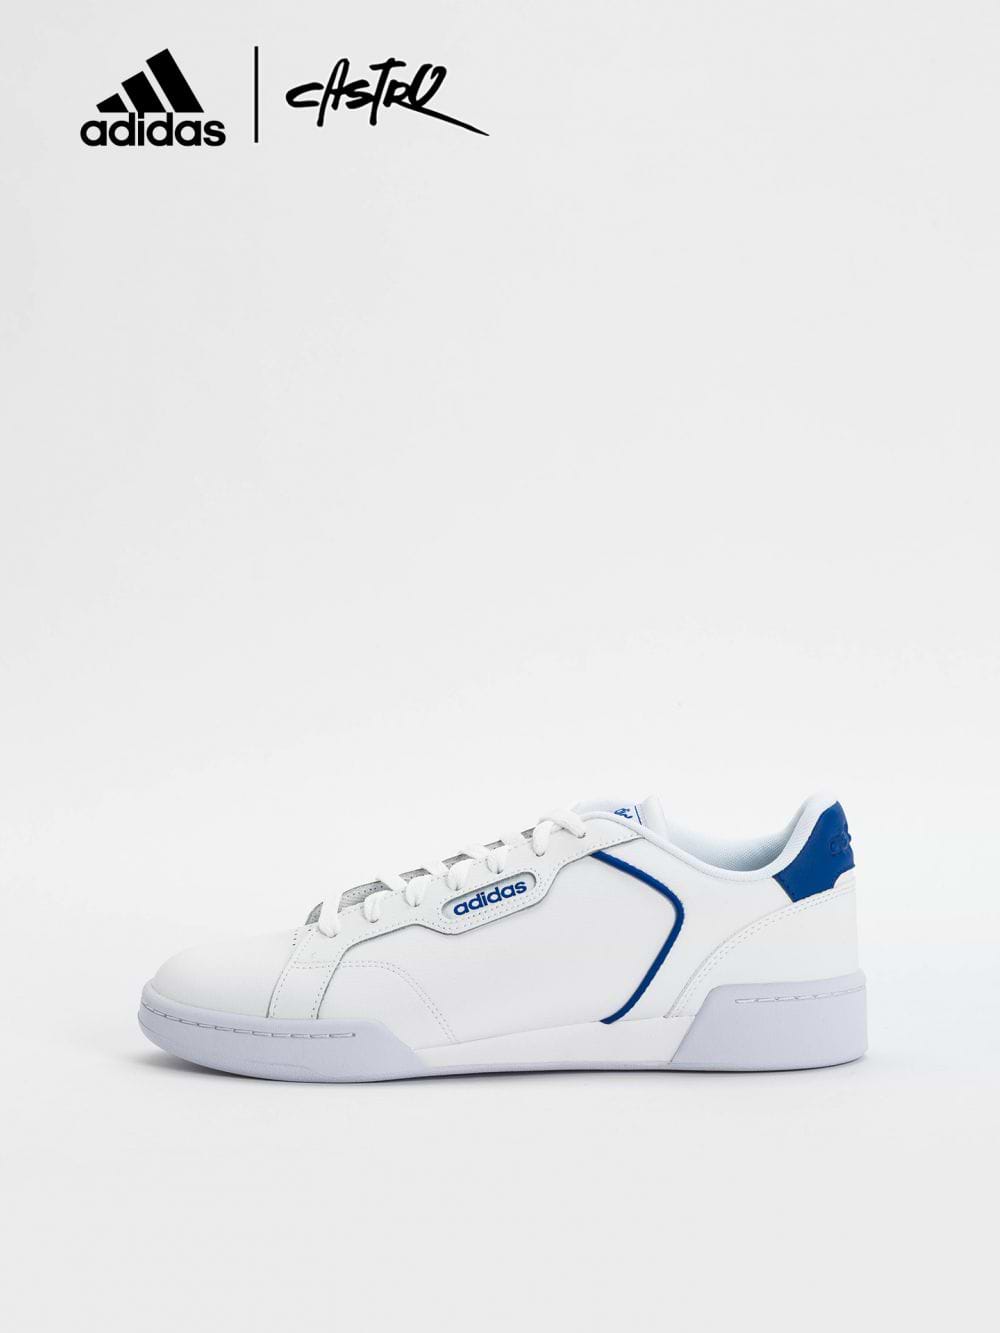 נעלי Adidas לבן וכחול / גברים